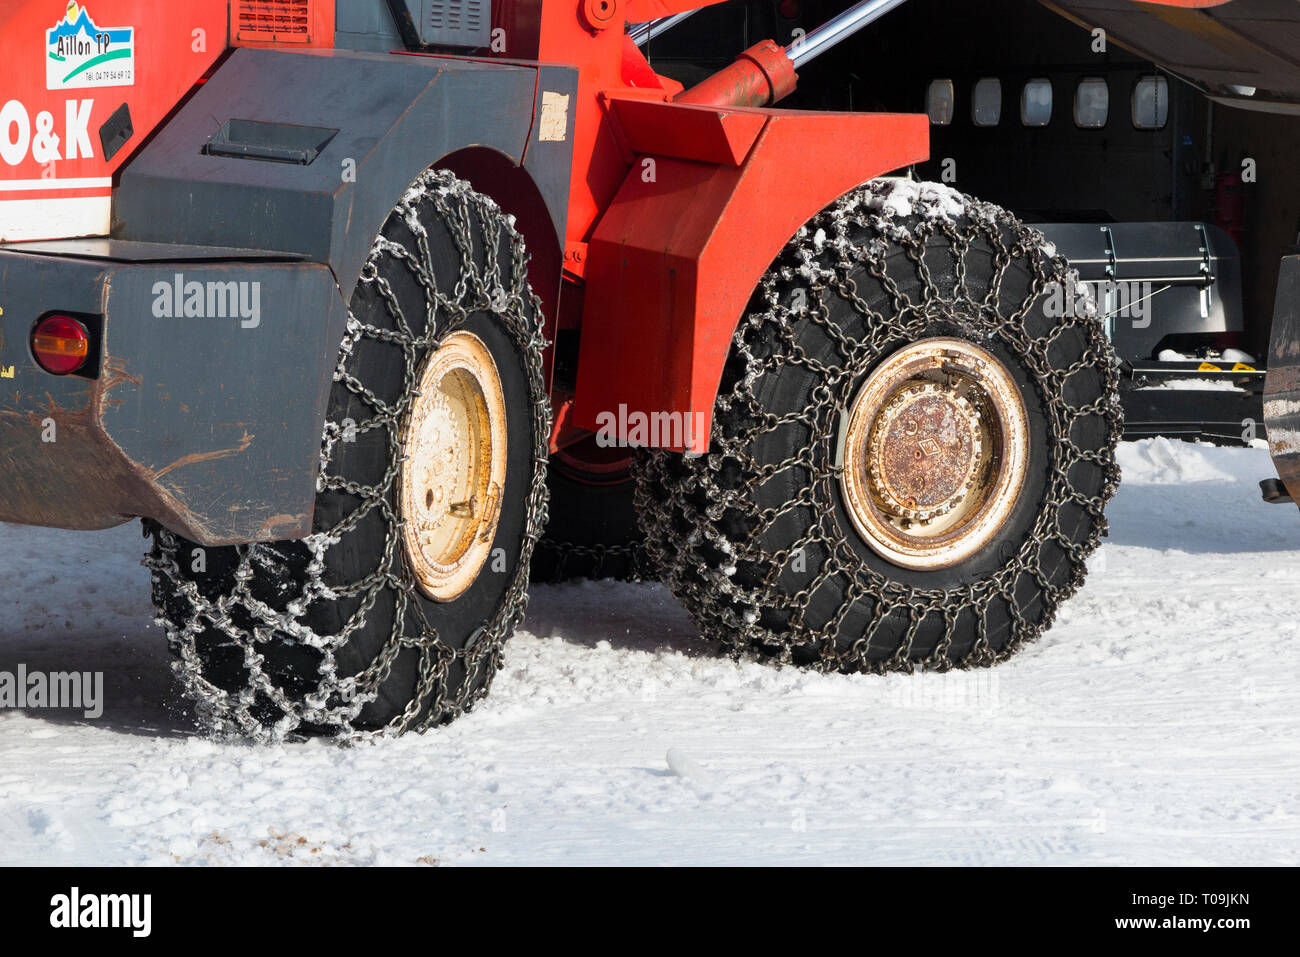 Schneekette / Ketten auf Vorder- & Rückseite/Rad/Räder/Reifen/Reifen eines  landwirtschaftlichen Nutzfahrzeugen, Radlader/Traktor in eisige Winter  Wetter mit Schnee und gefrorene Eis. (104 Stockfotografie - Alamy